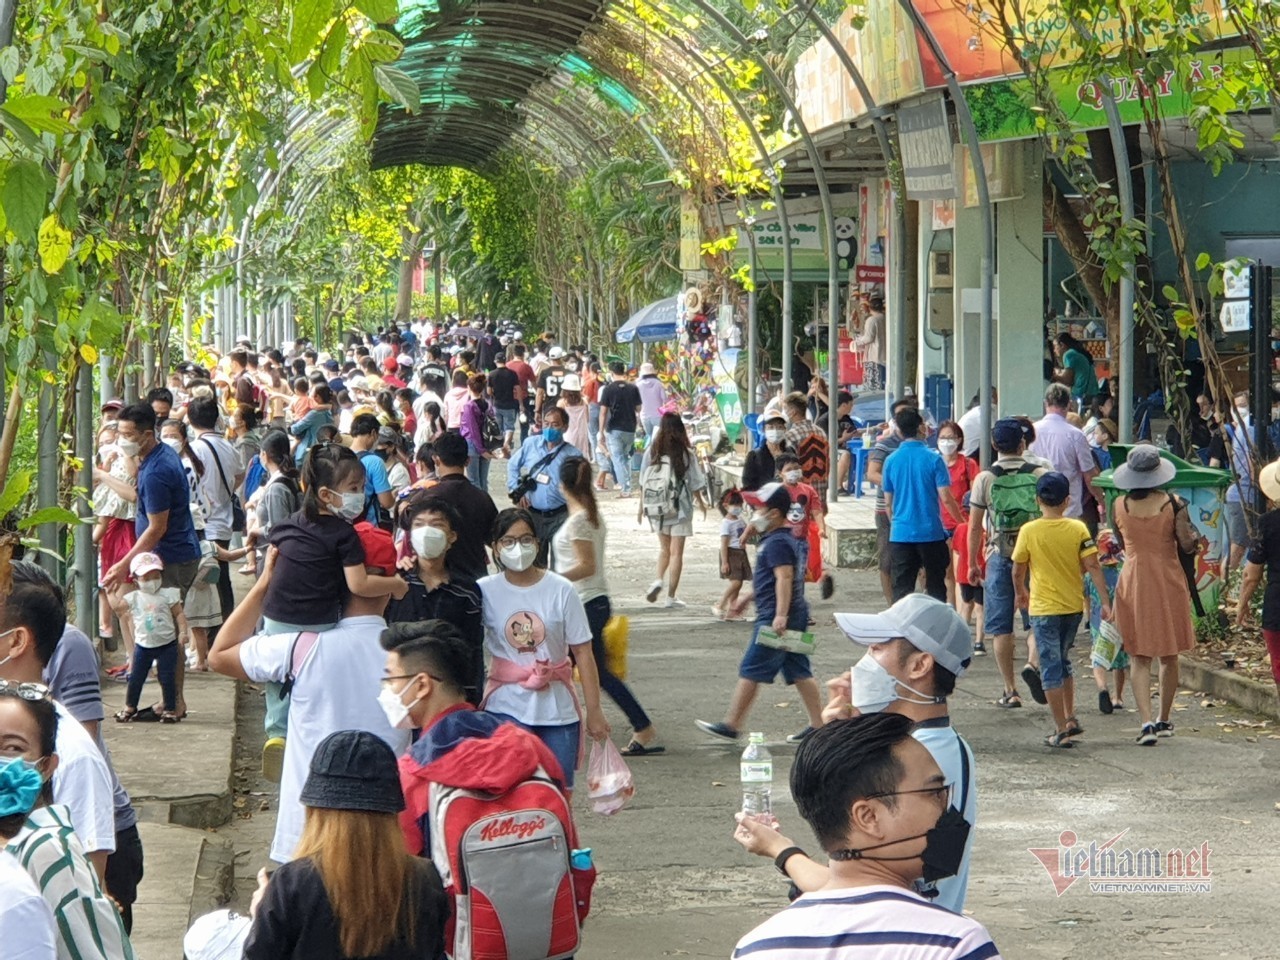 Thảo Cầm Viên Sài Gòn bất ngờ đón hàng nghìn khách vui chơi ngày cuối tuần - Ảnh 6.